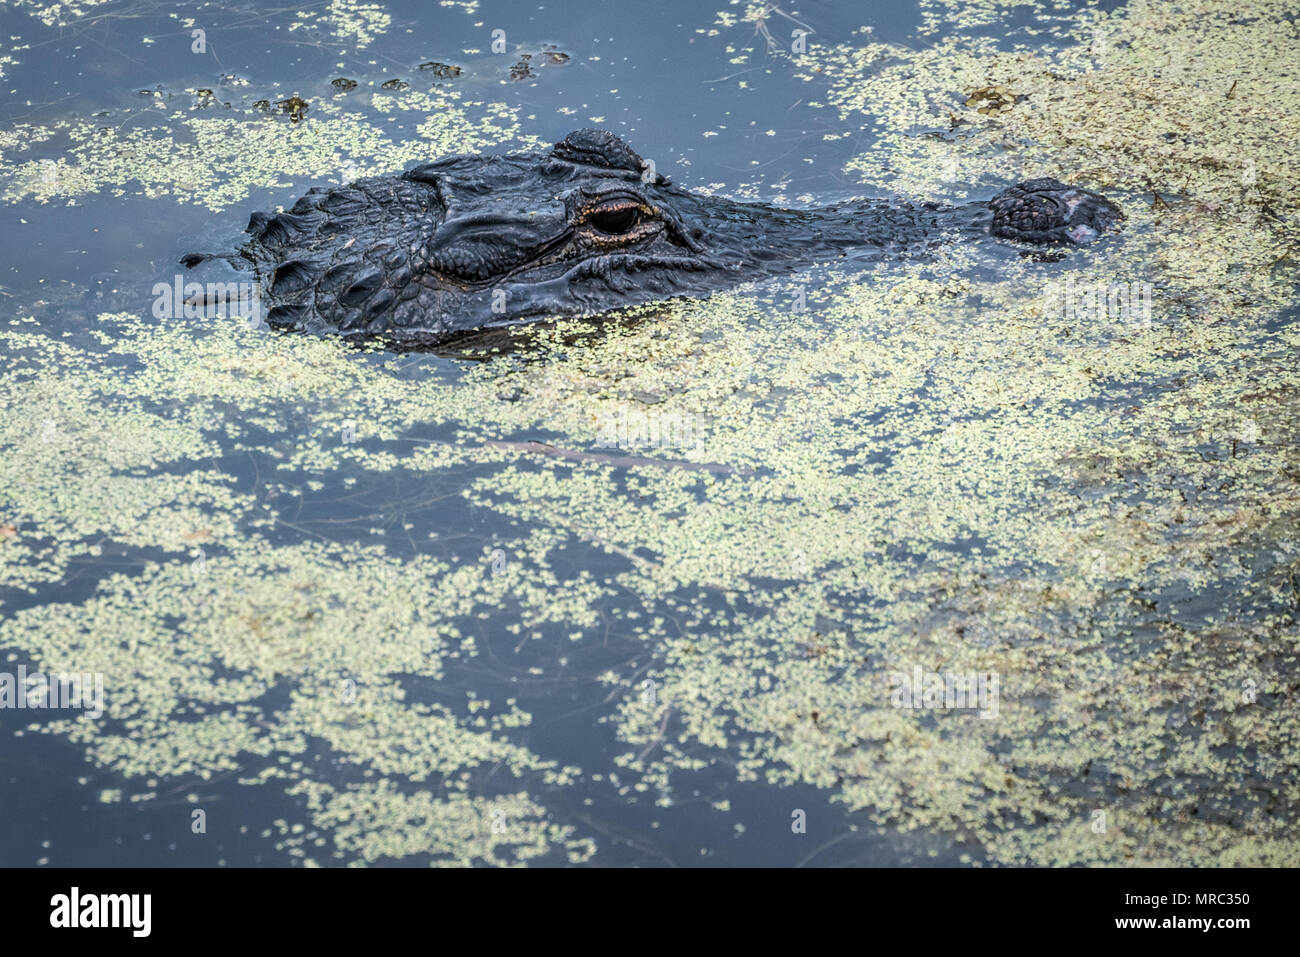 Alligator Floride immobile dans les algues flottantes de l'eau couvert de la rivière Guana à Ponte Vedra Beach le long de la Floride A1A. Banque D'Images